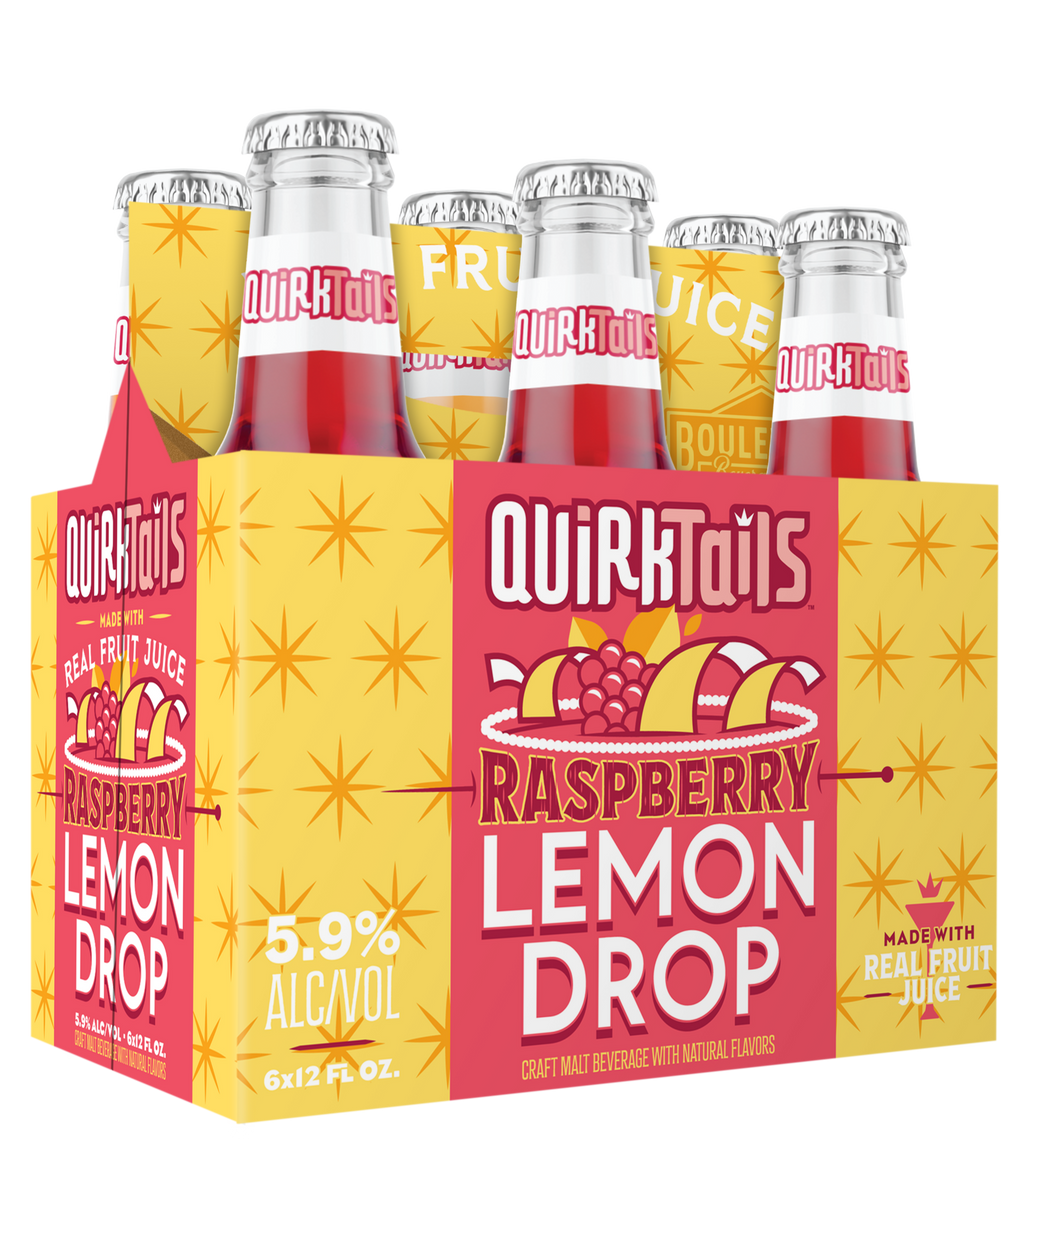 Quirktails Raspberry Lemon Drop Six Pack 12 oz. Bottles